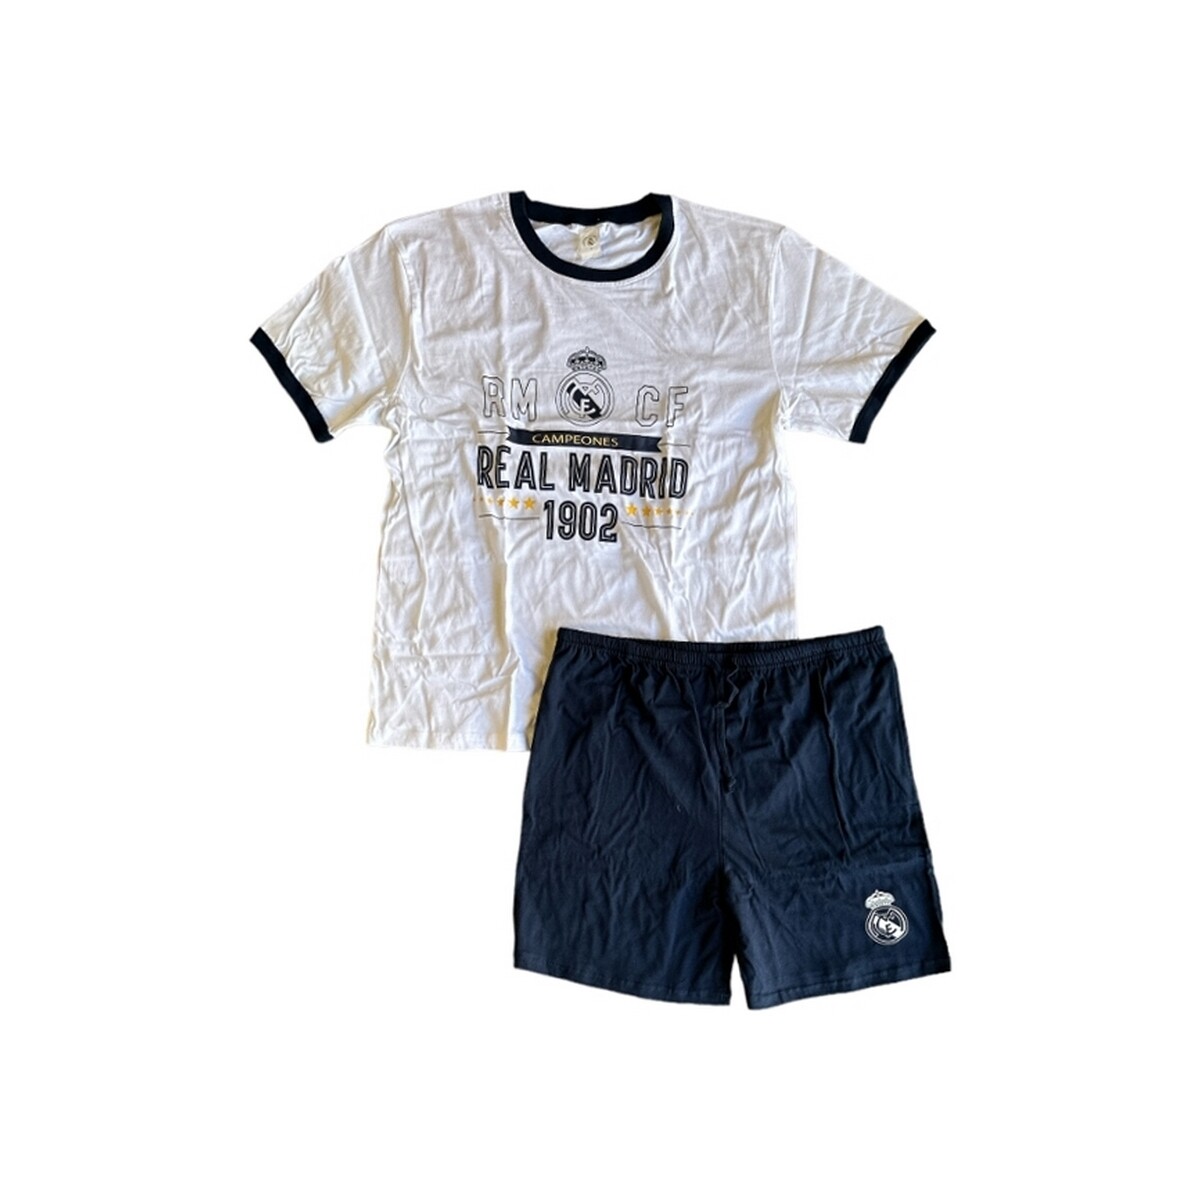 Textil Ir para o conteúdo principal Real Madrid RM255C Azul